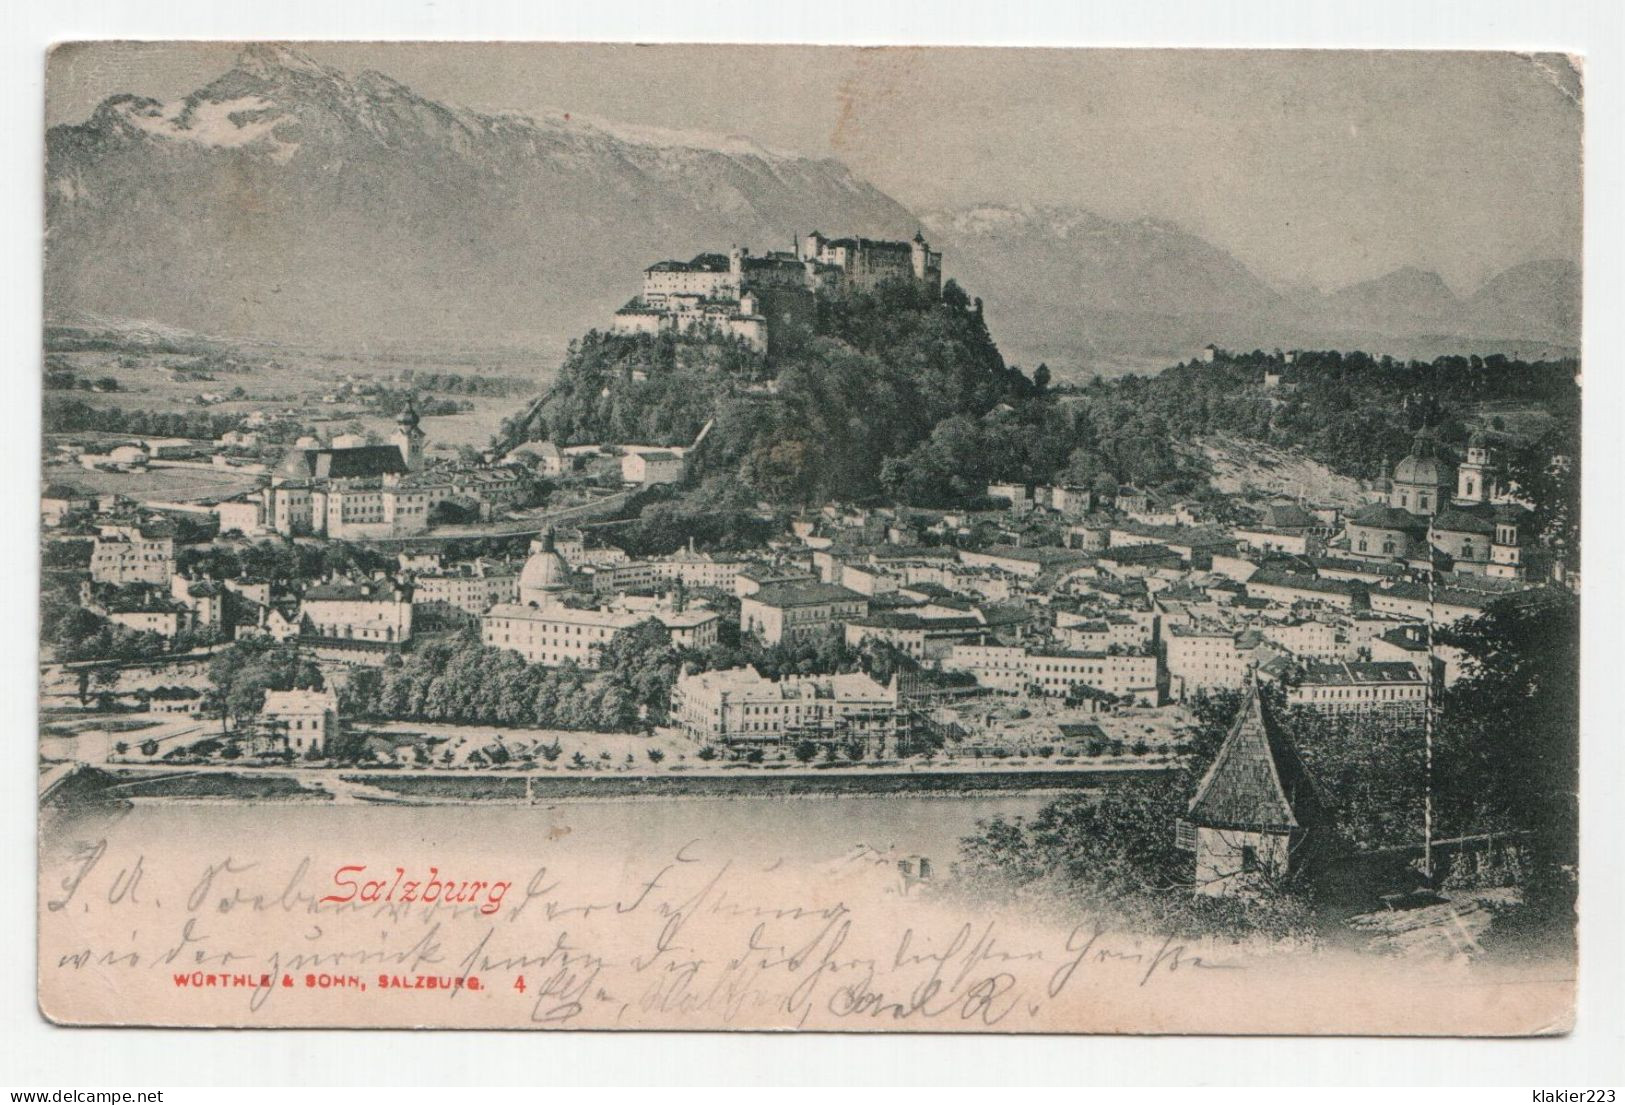 Salzburg. Jahr 1901 - Bad Gastein